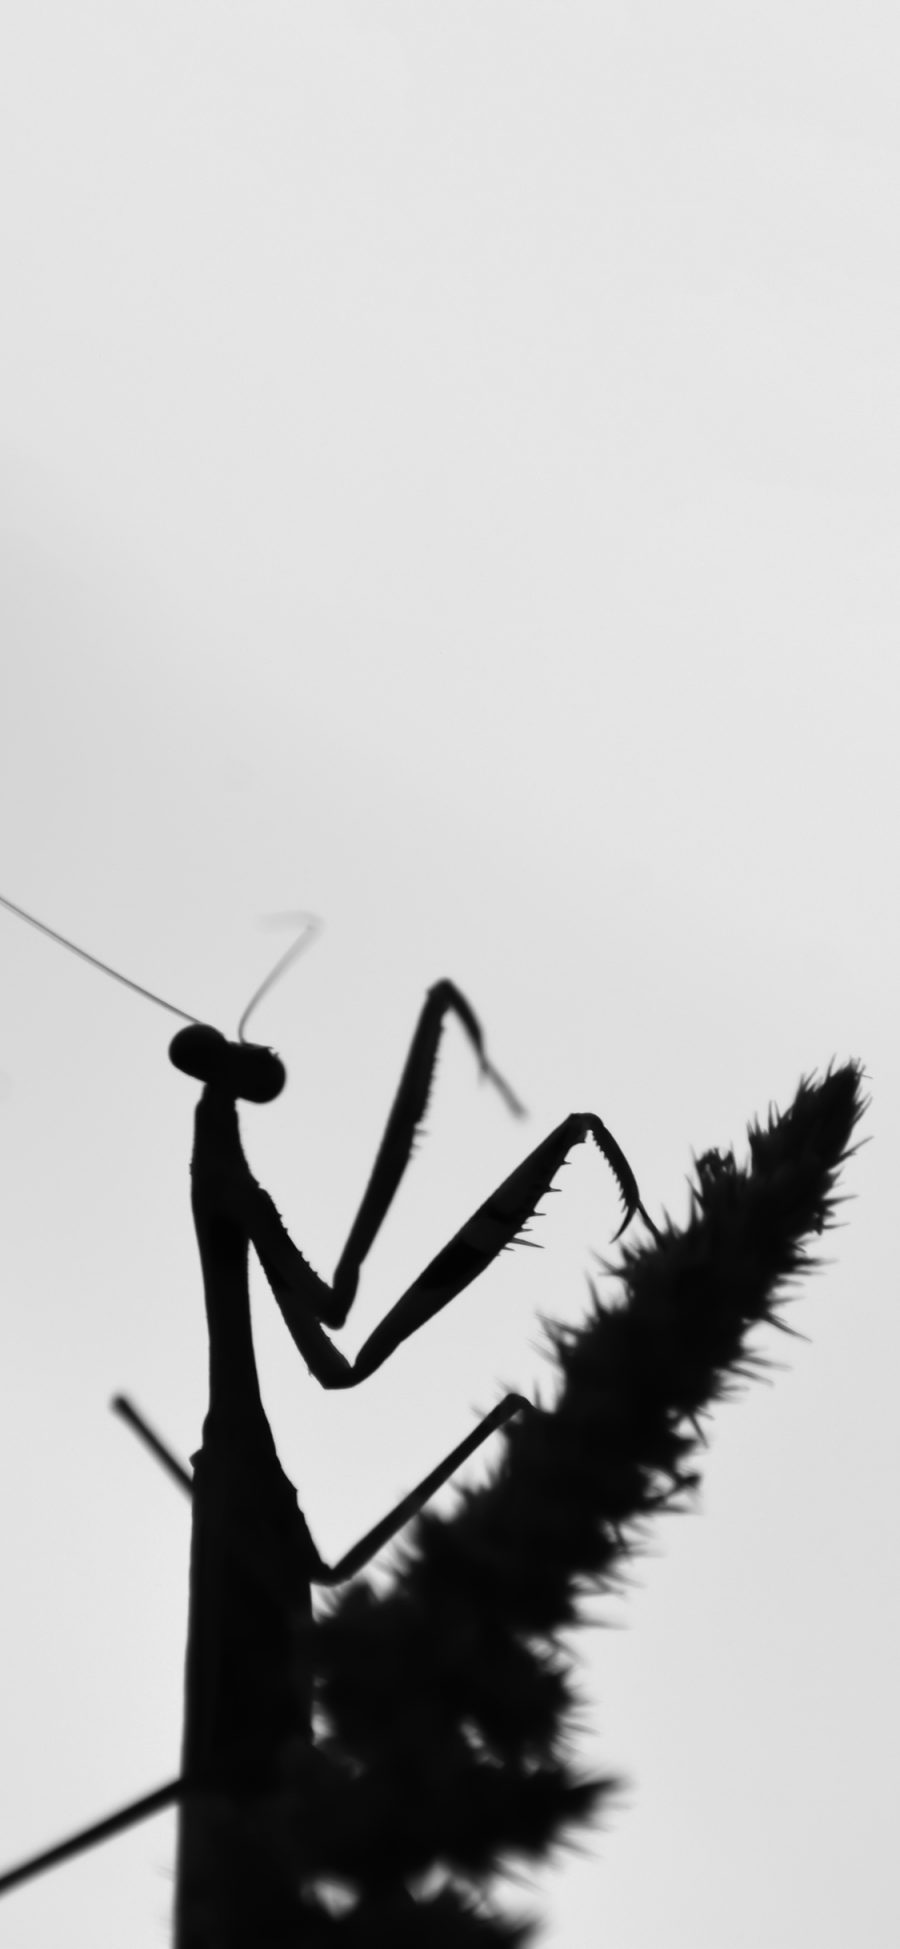 [2436×1125]昆虫 螳螂 大刀 黑白 苹果手机壁纸图片